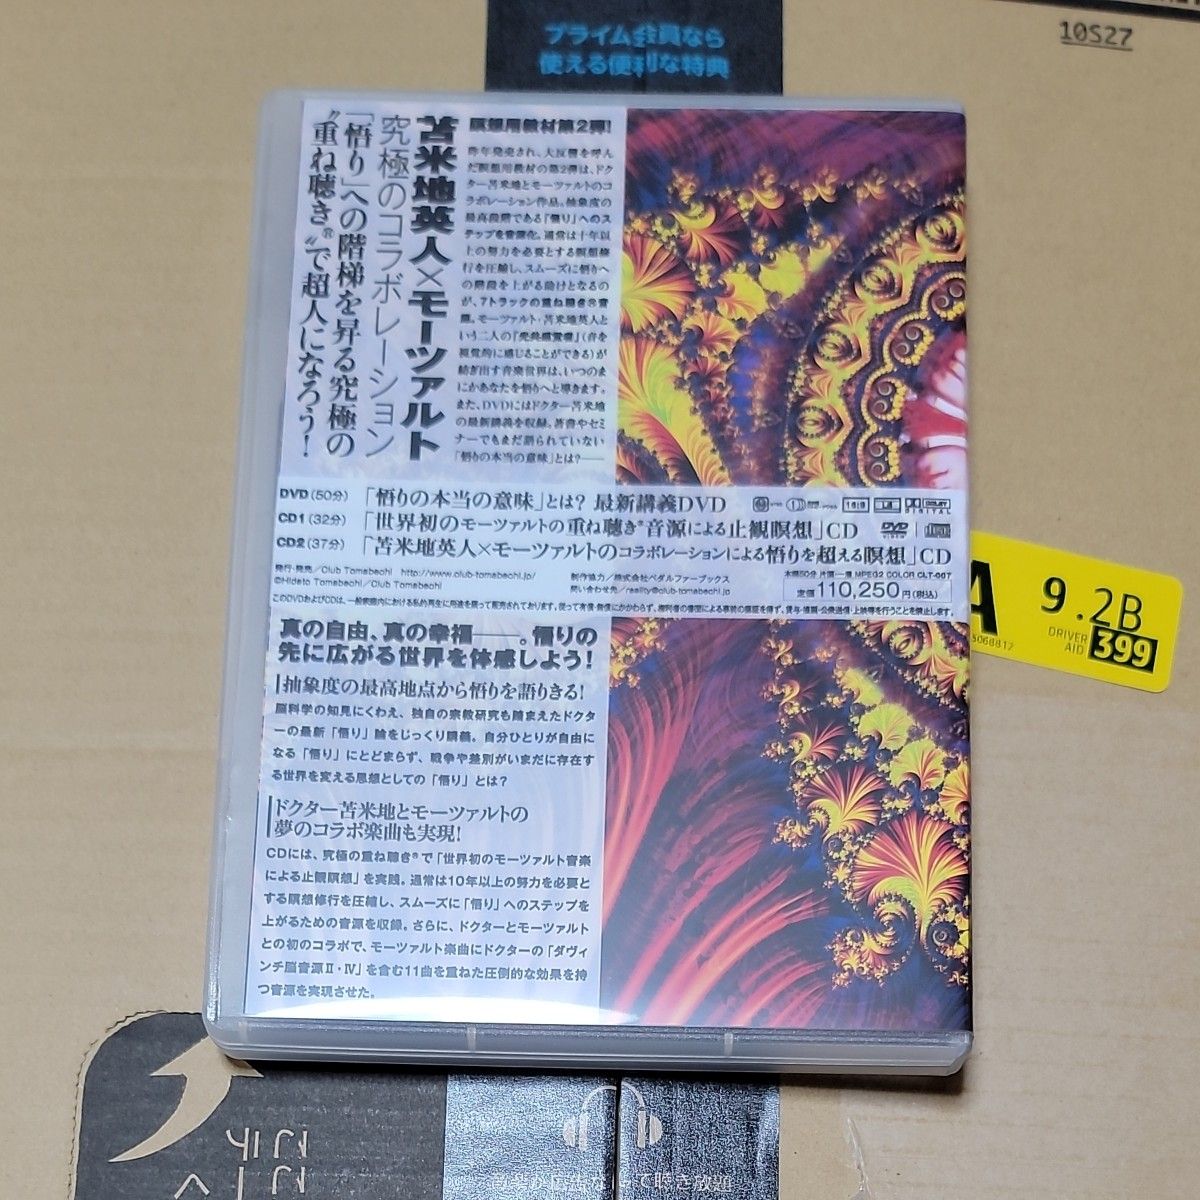 苫米地英人 『「悟り」への道 -The Road to Satori-』瞑想 CD 気功 大周天 ヴィパッサナー瞑想 DVD